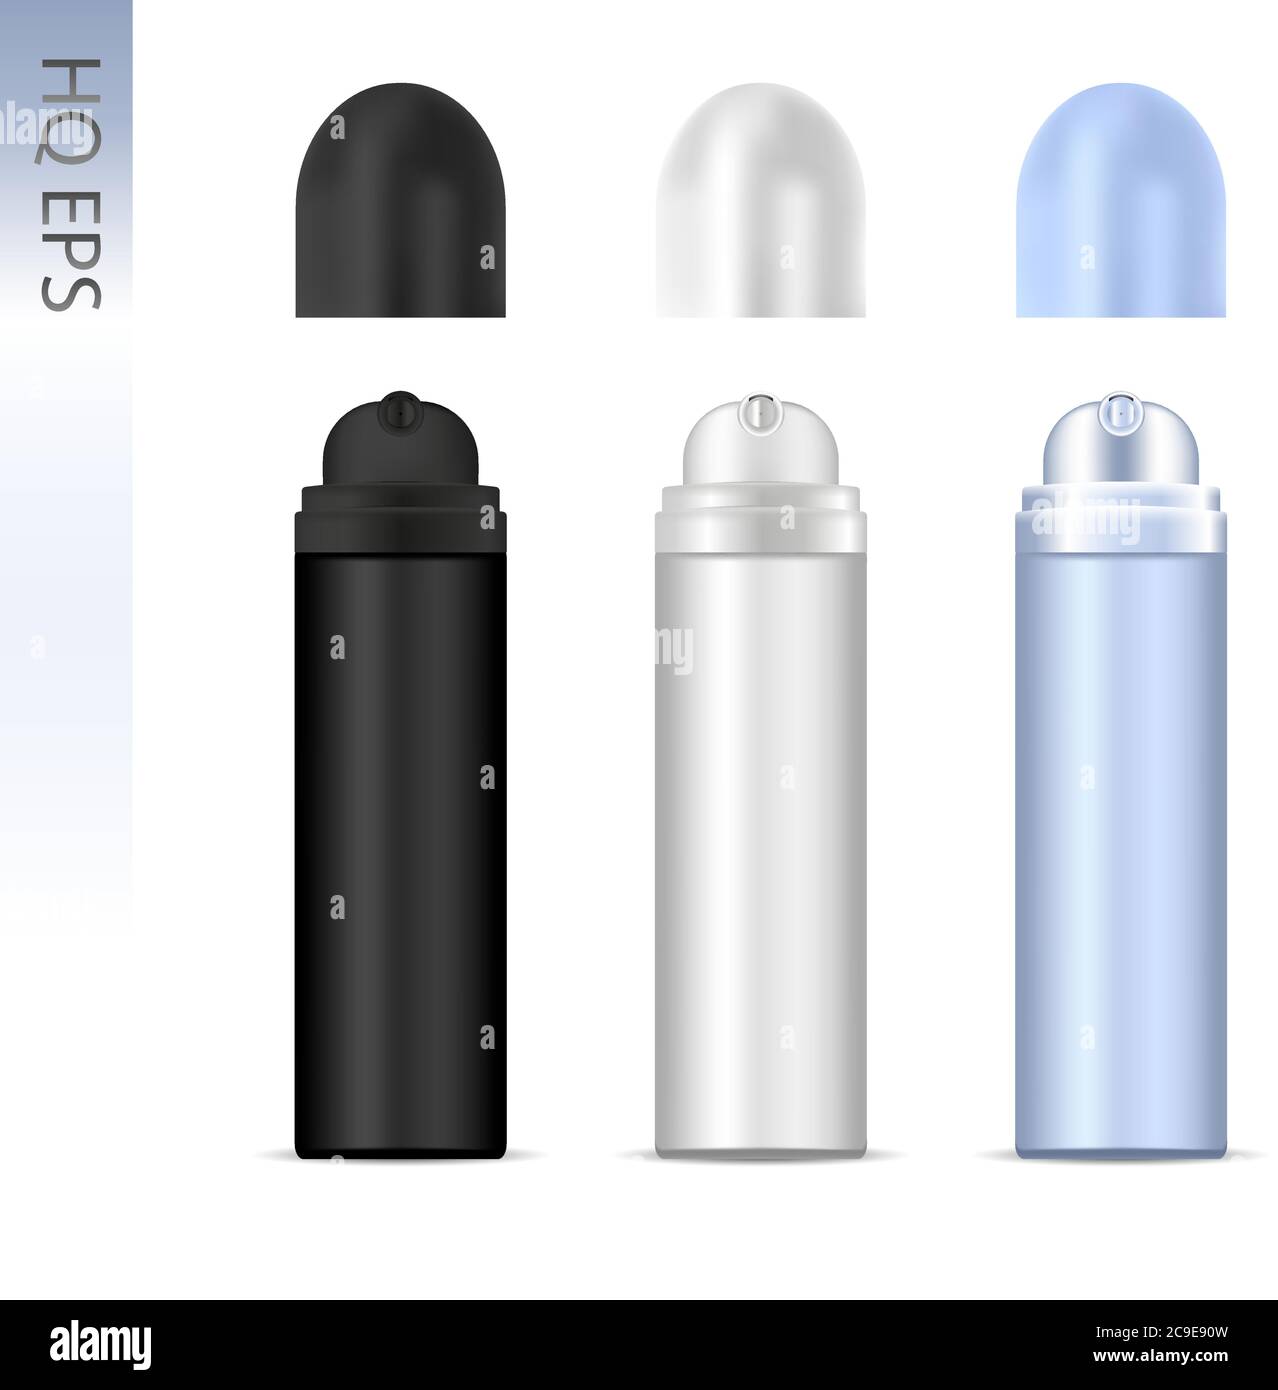 Set bomboletta spray deodorante in alluminio. Bottiglie cosmetiche 3d  Vector con tappi aperti rotondi. Immagine, isolata su sfondo bianco  Immagine e Vettoriale - Alamy